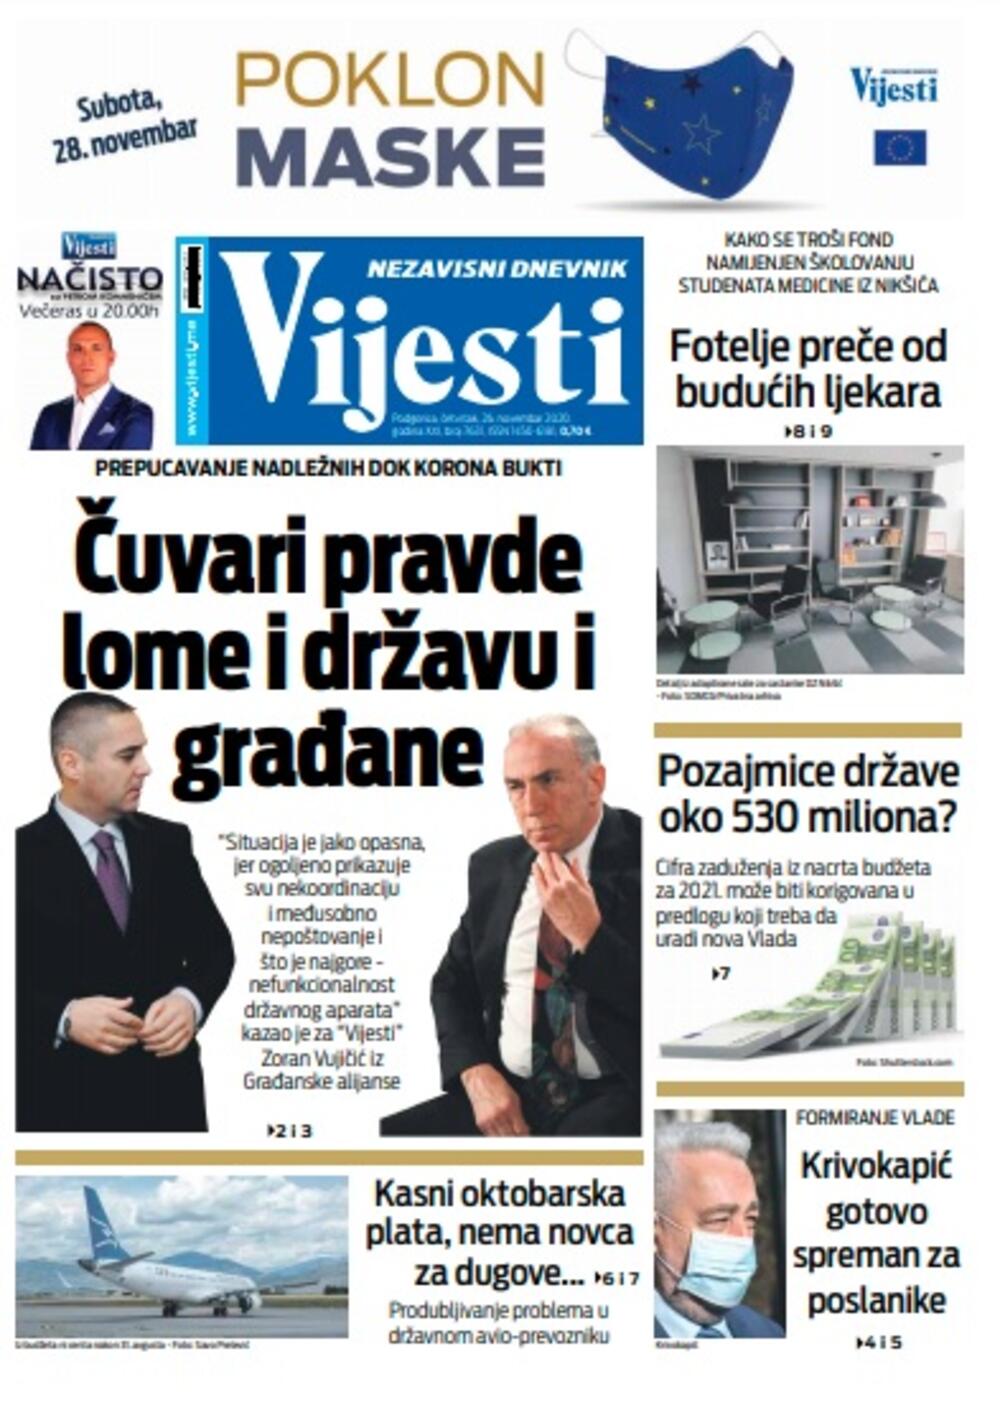 Naslovna strana "Vijesti" za četvrtak 26. novembar 2020. godine, Foto: Vijesti